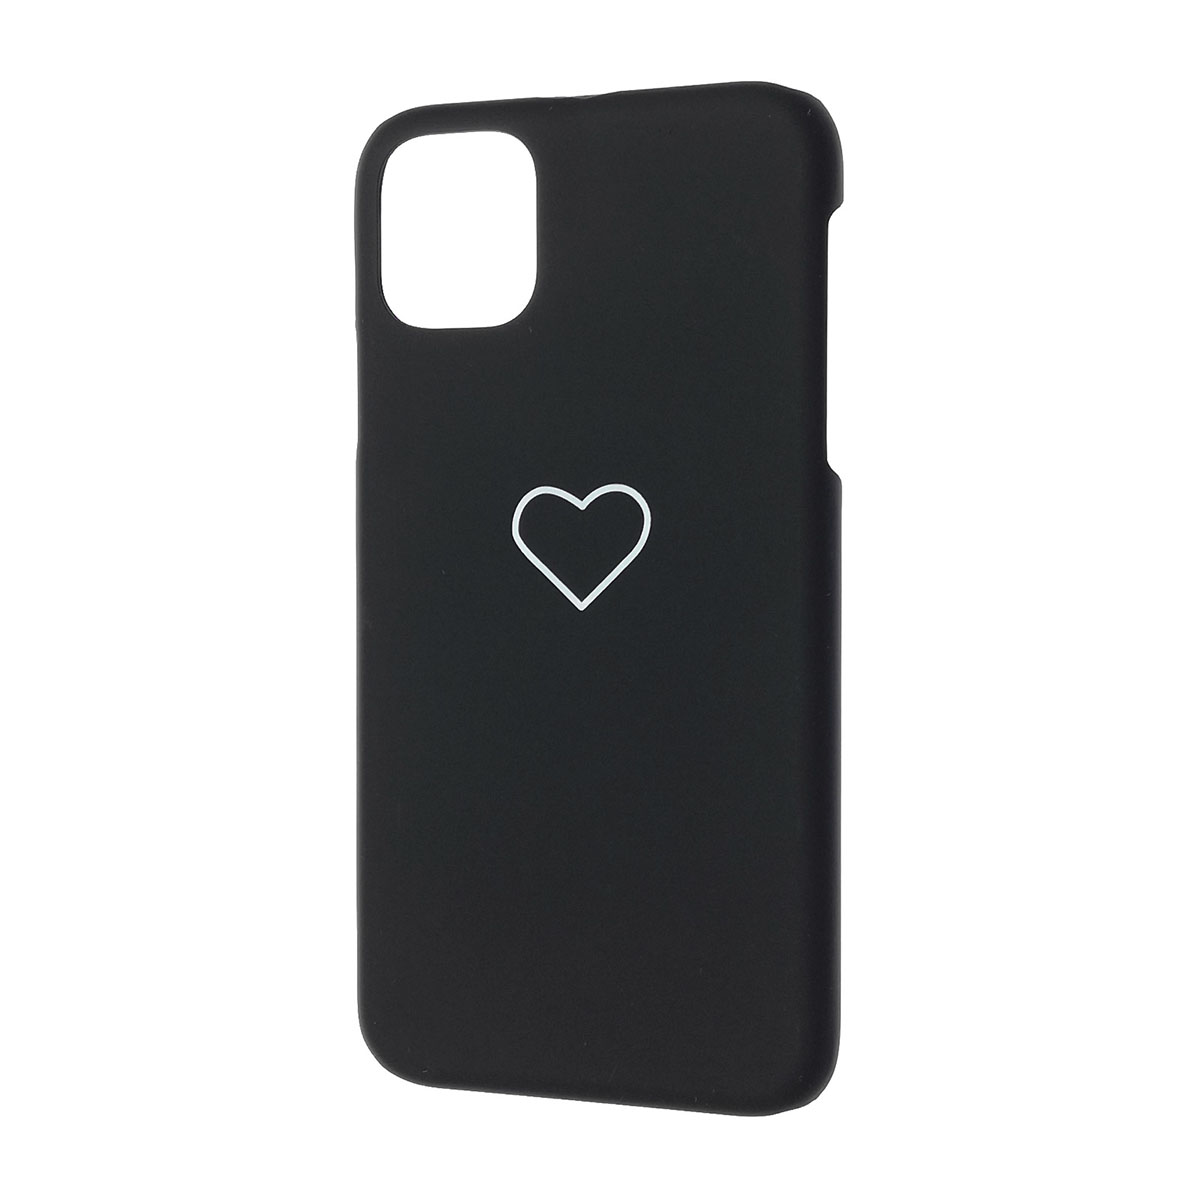 Чехол накладка для APPLE iPhone 11 Pro MAX, пластик, матовый, рисунок Сердце, цвет черный.